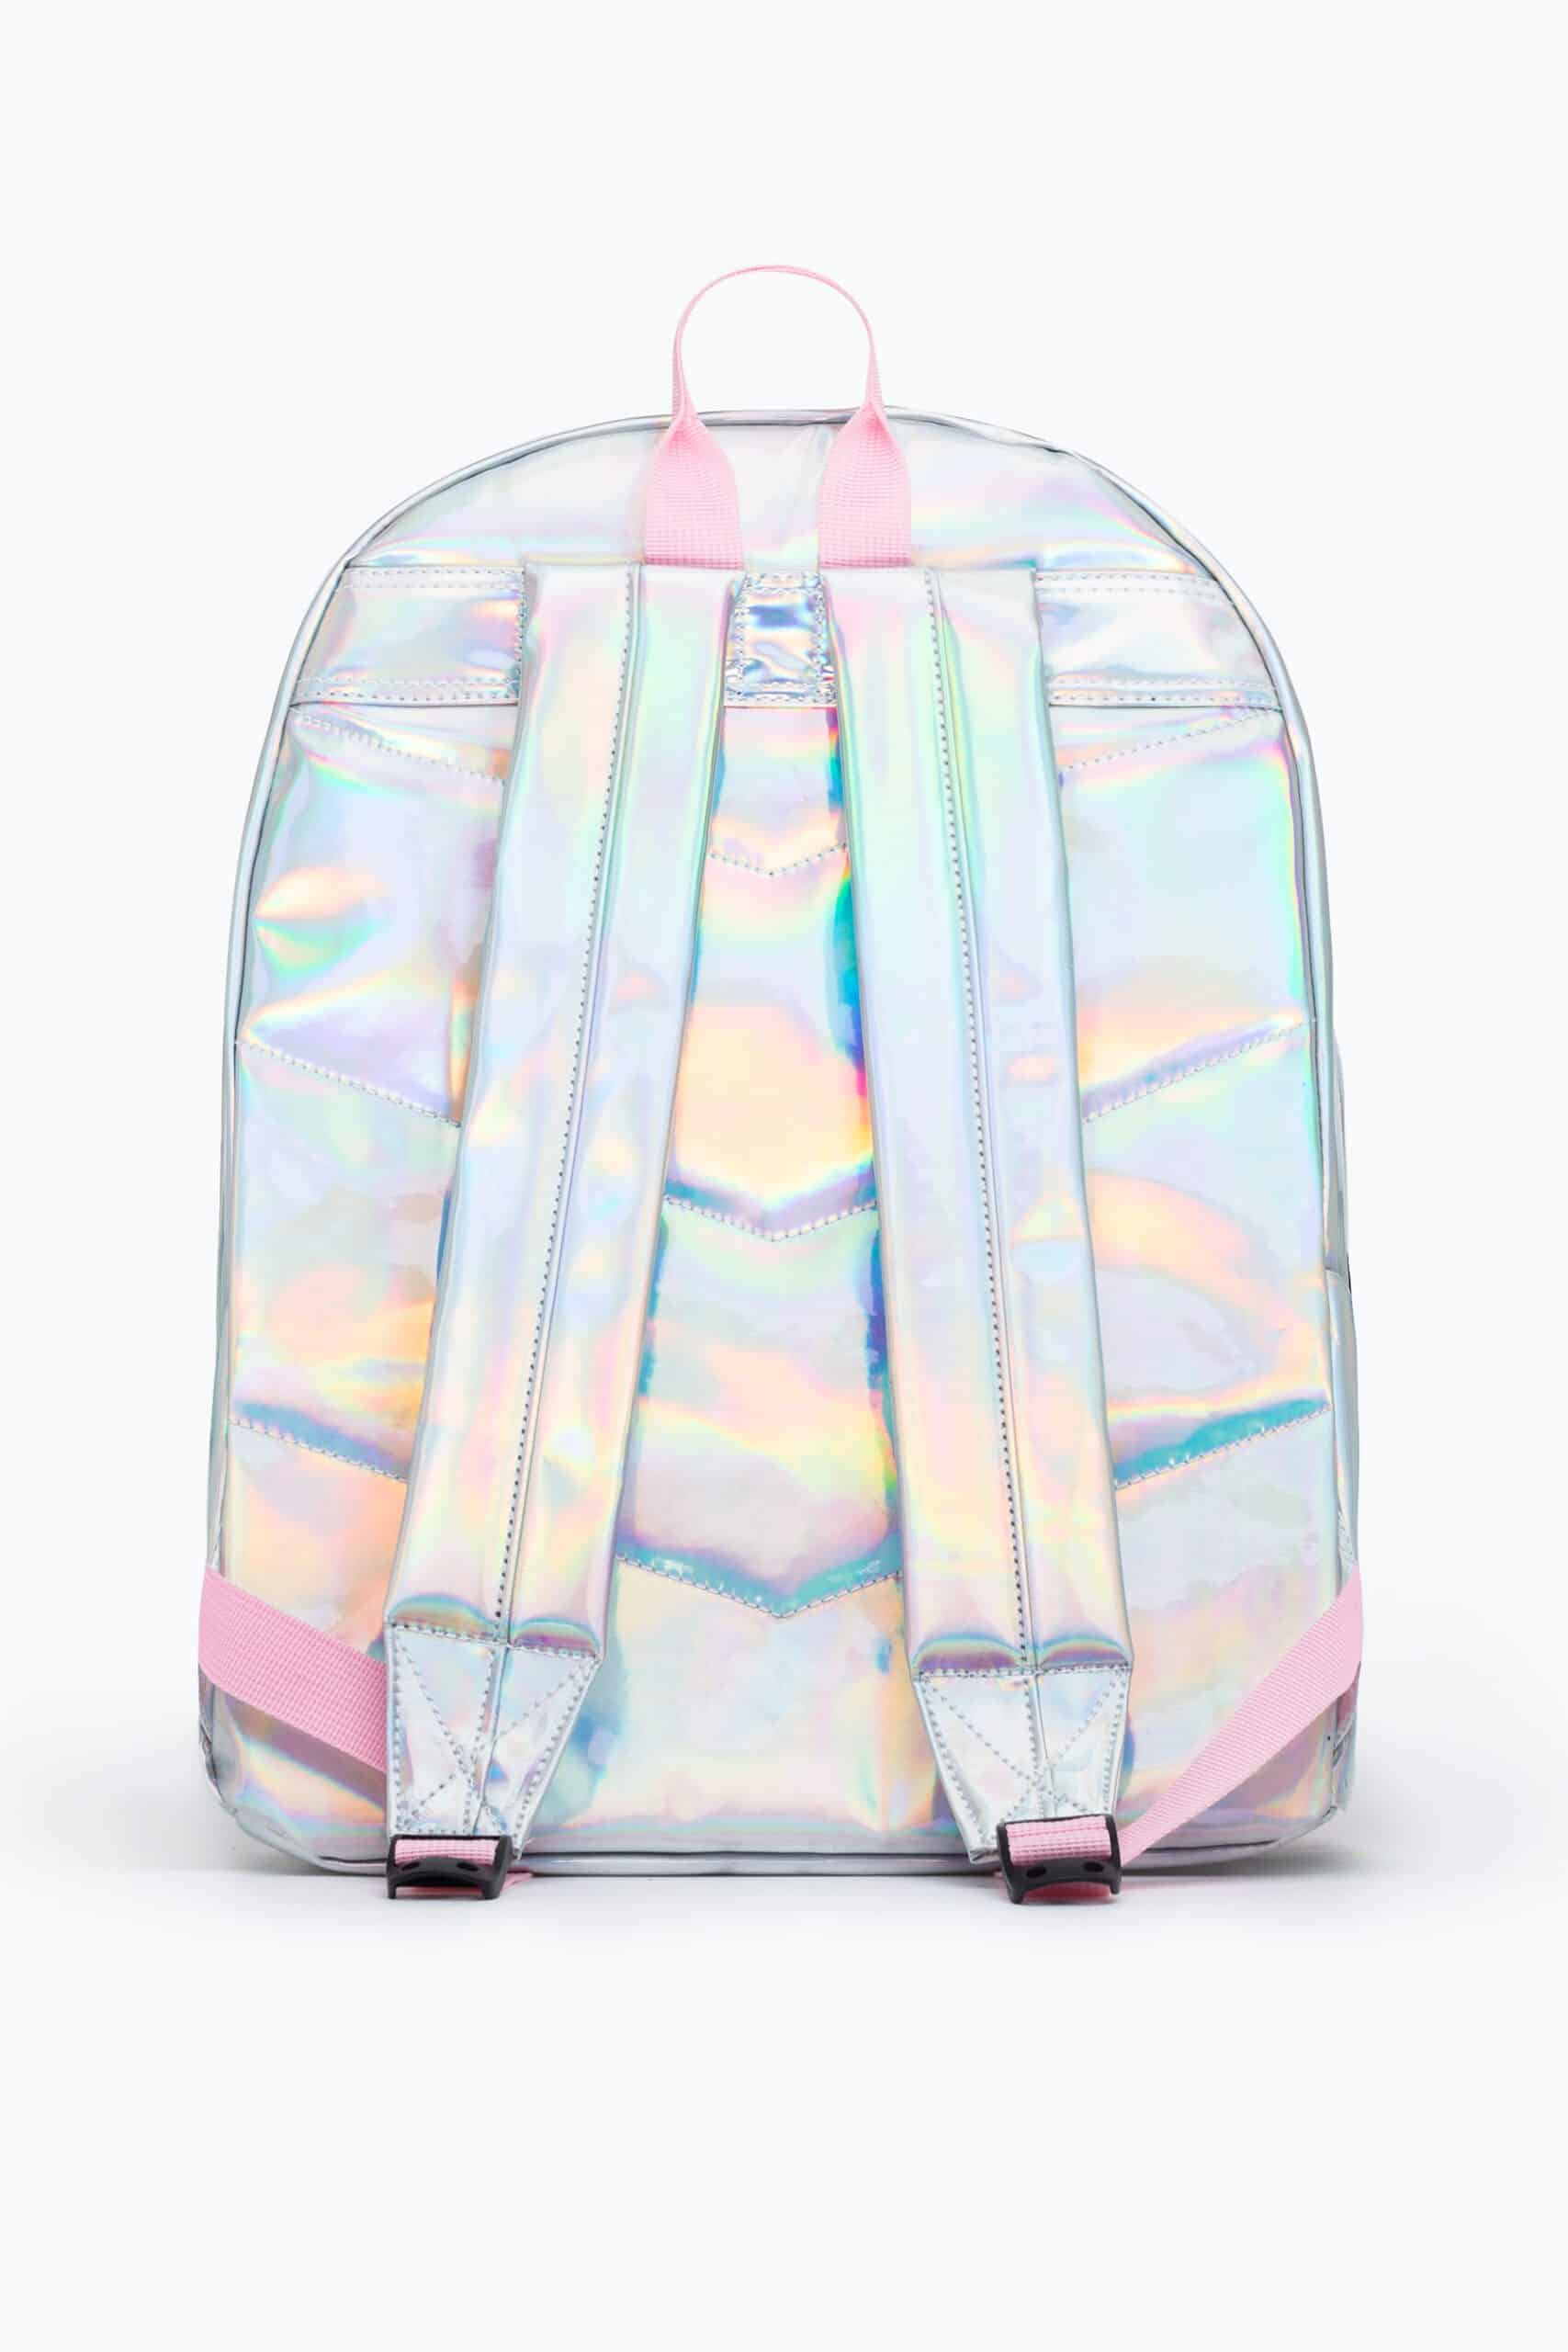 hype metallic unicorn backpack back view